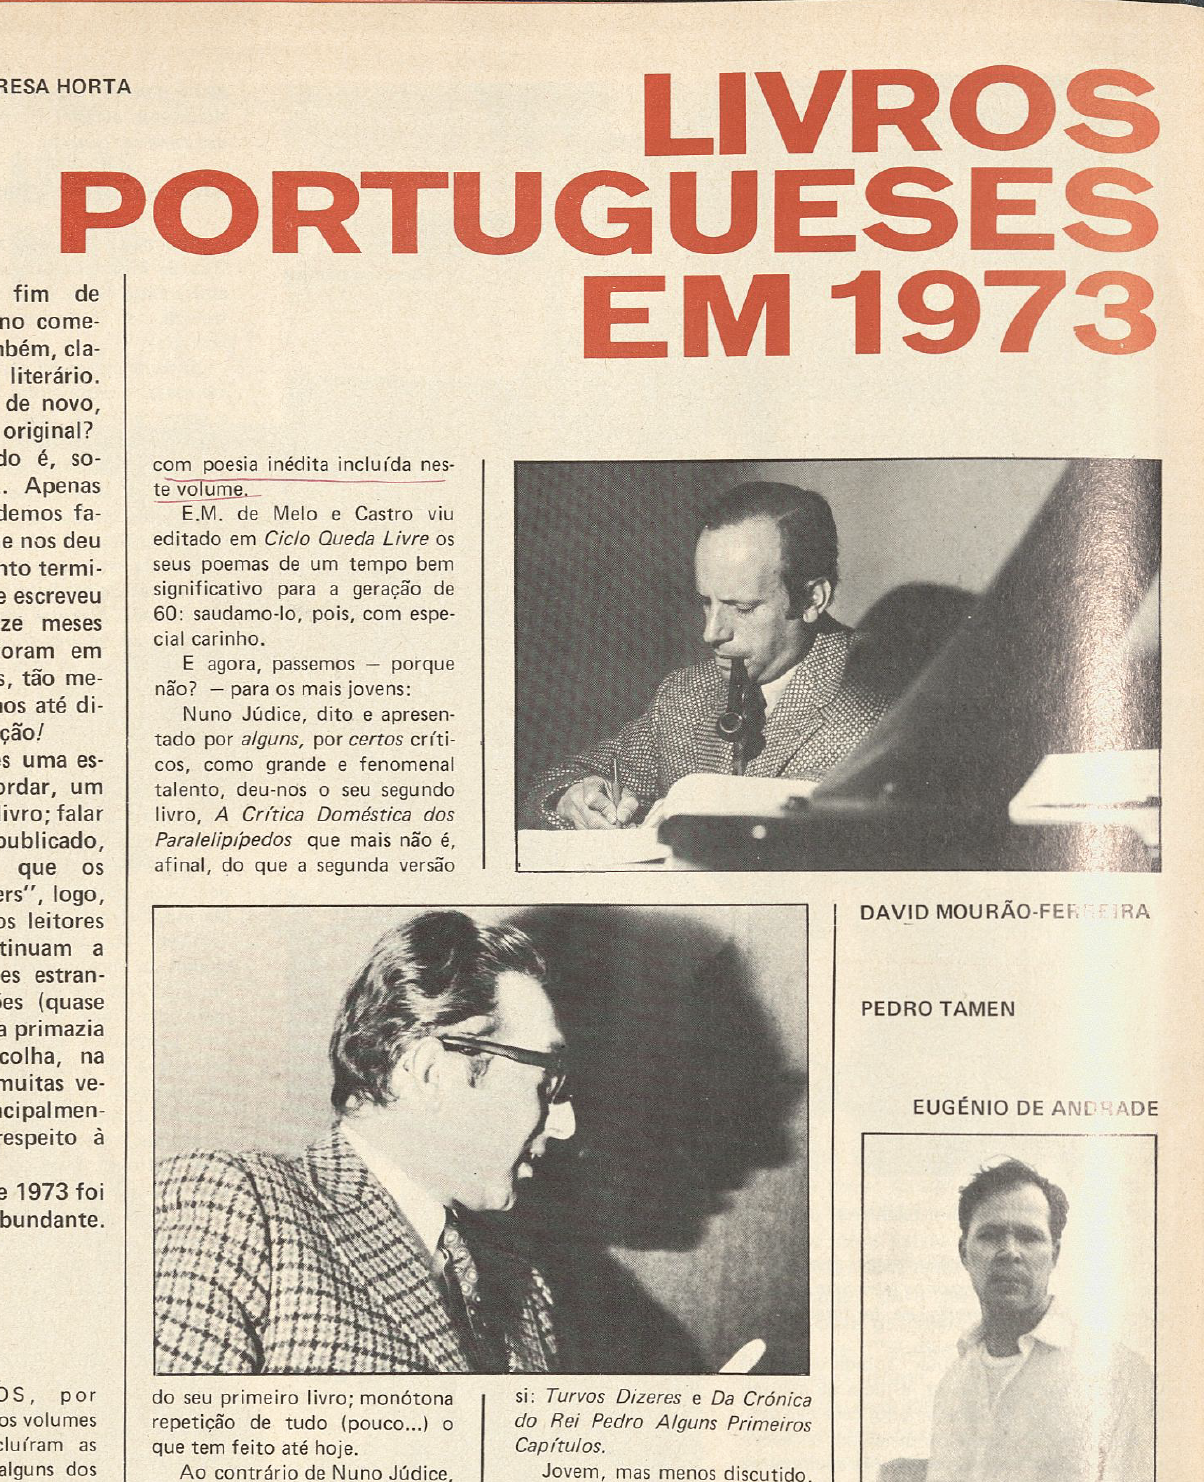 "Livros portugueses em 1973"